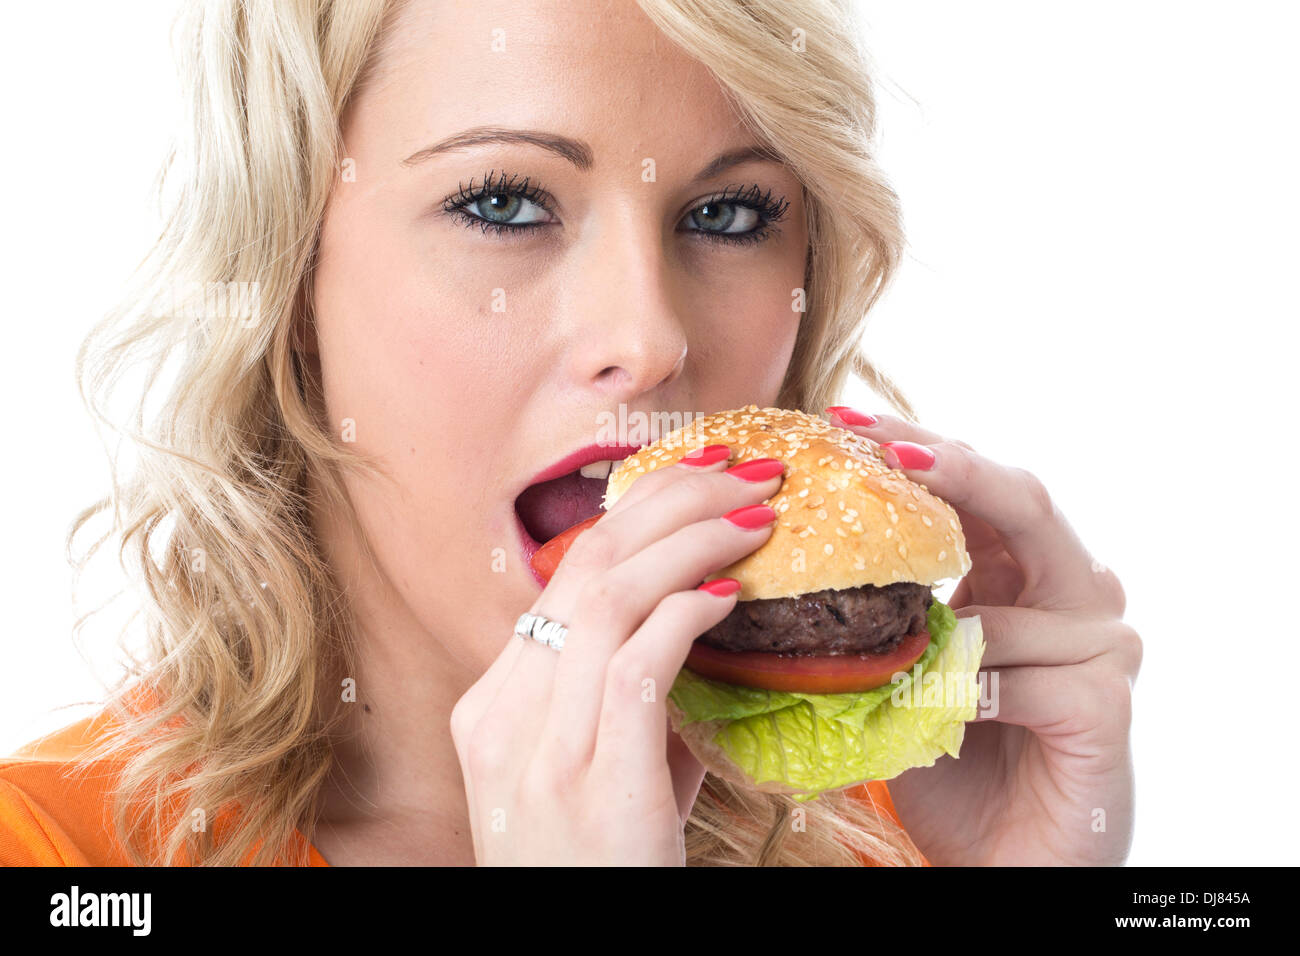 Fiducioso positivo felice giovane donna di mangiare un hamburger di manzo in una pagnotta di pane con pomodori e lattuga guarnire isolata contro uno sfondo bianco Foto Stock